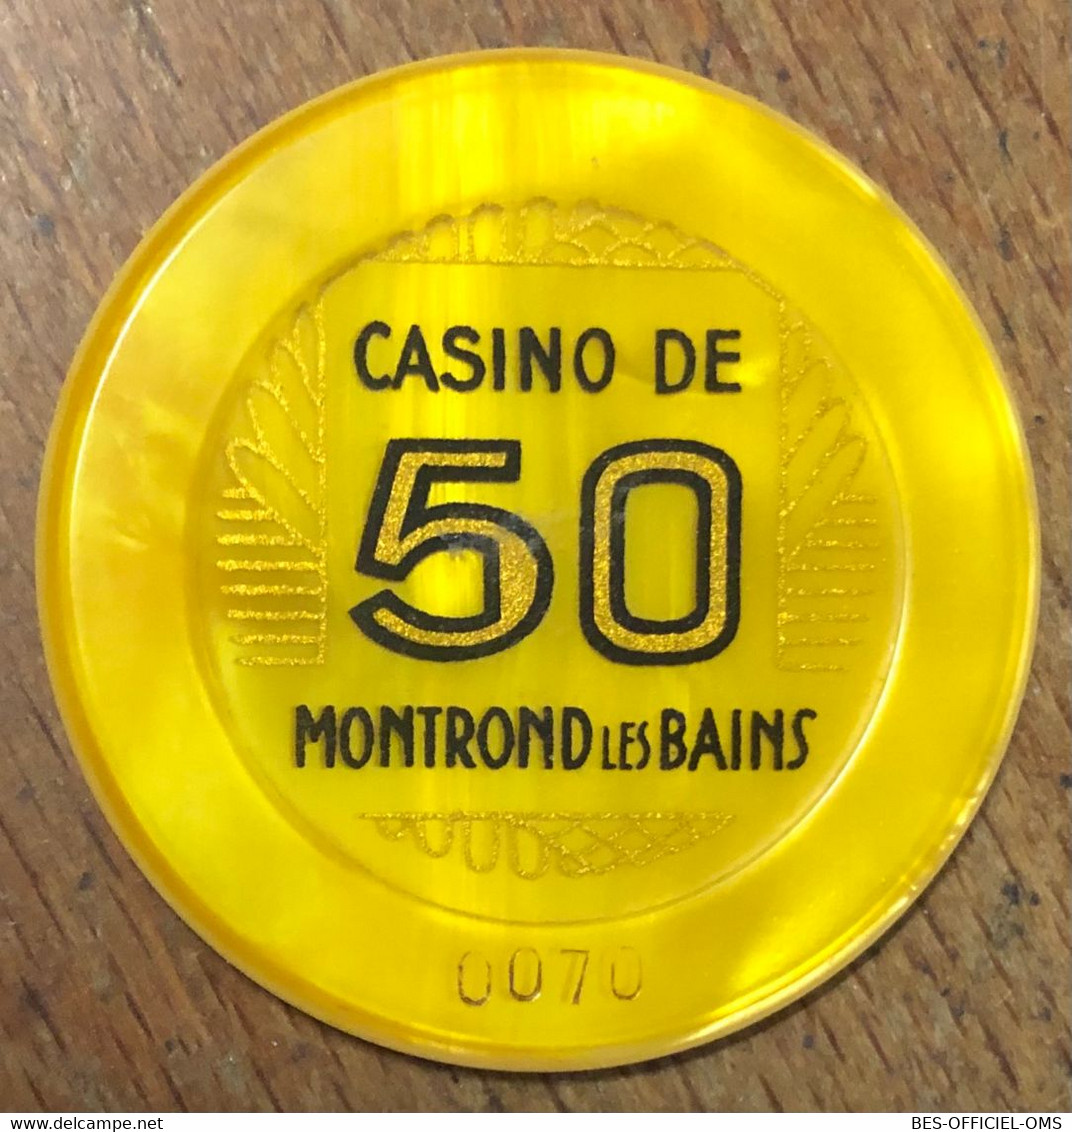 42 CASINO DE MONTROND-LES-BAINS JETON DE 50 FRANCS N° 0070 CHIP COINS TOKENS GAMING - Casino